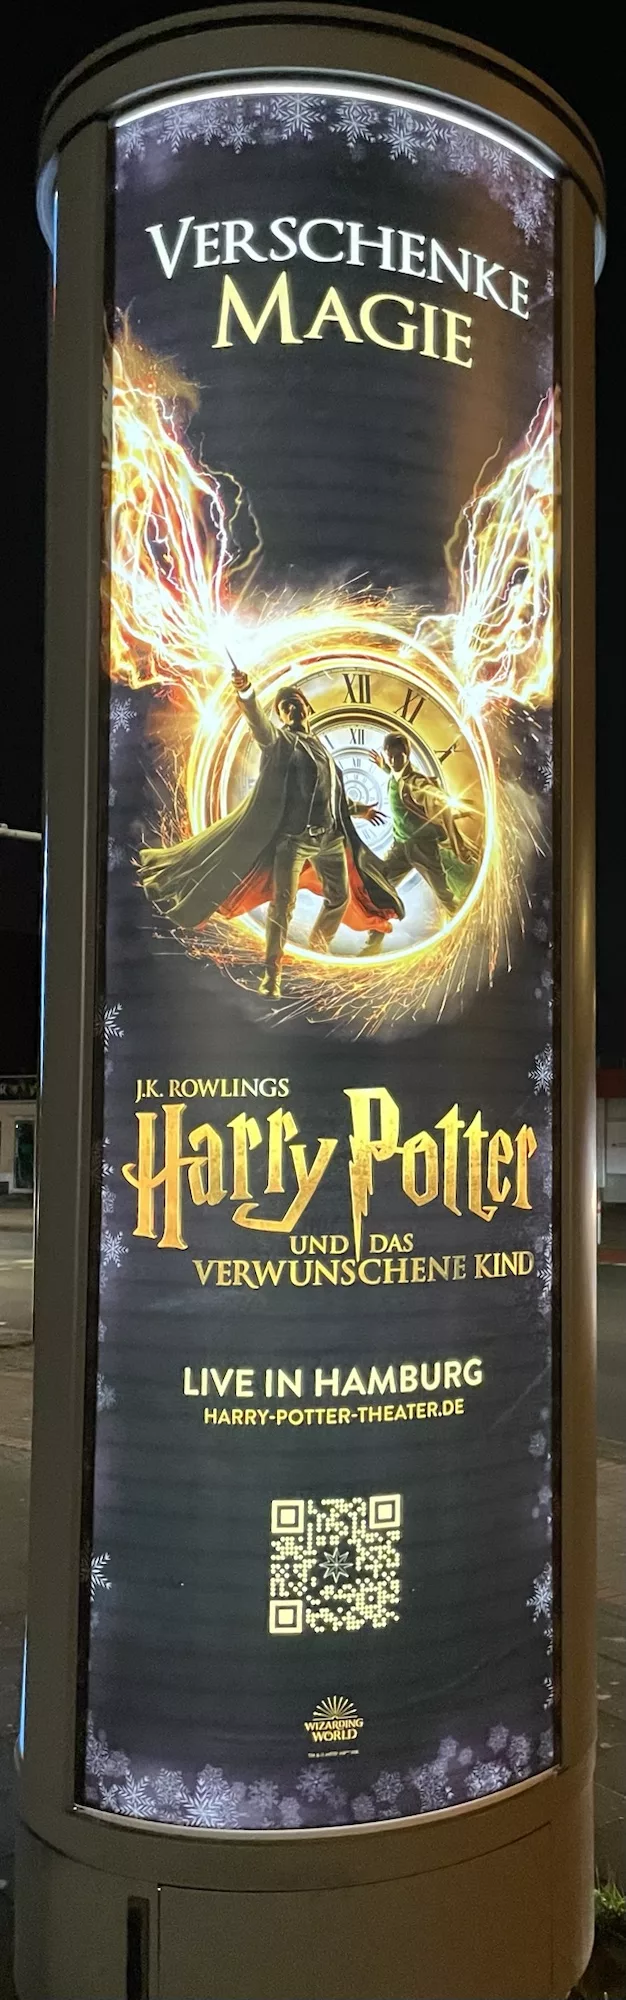 Litfaßsäule mit Reklane für Harry Potter Theaterstück in Hamburg.